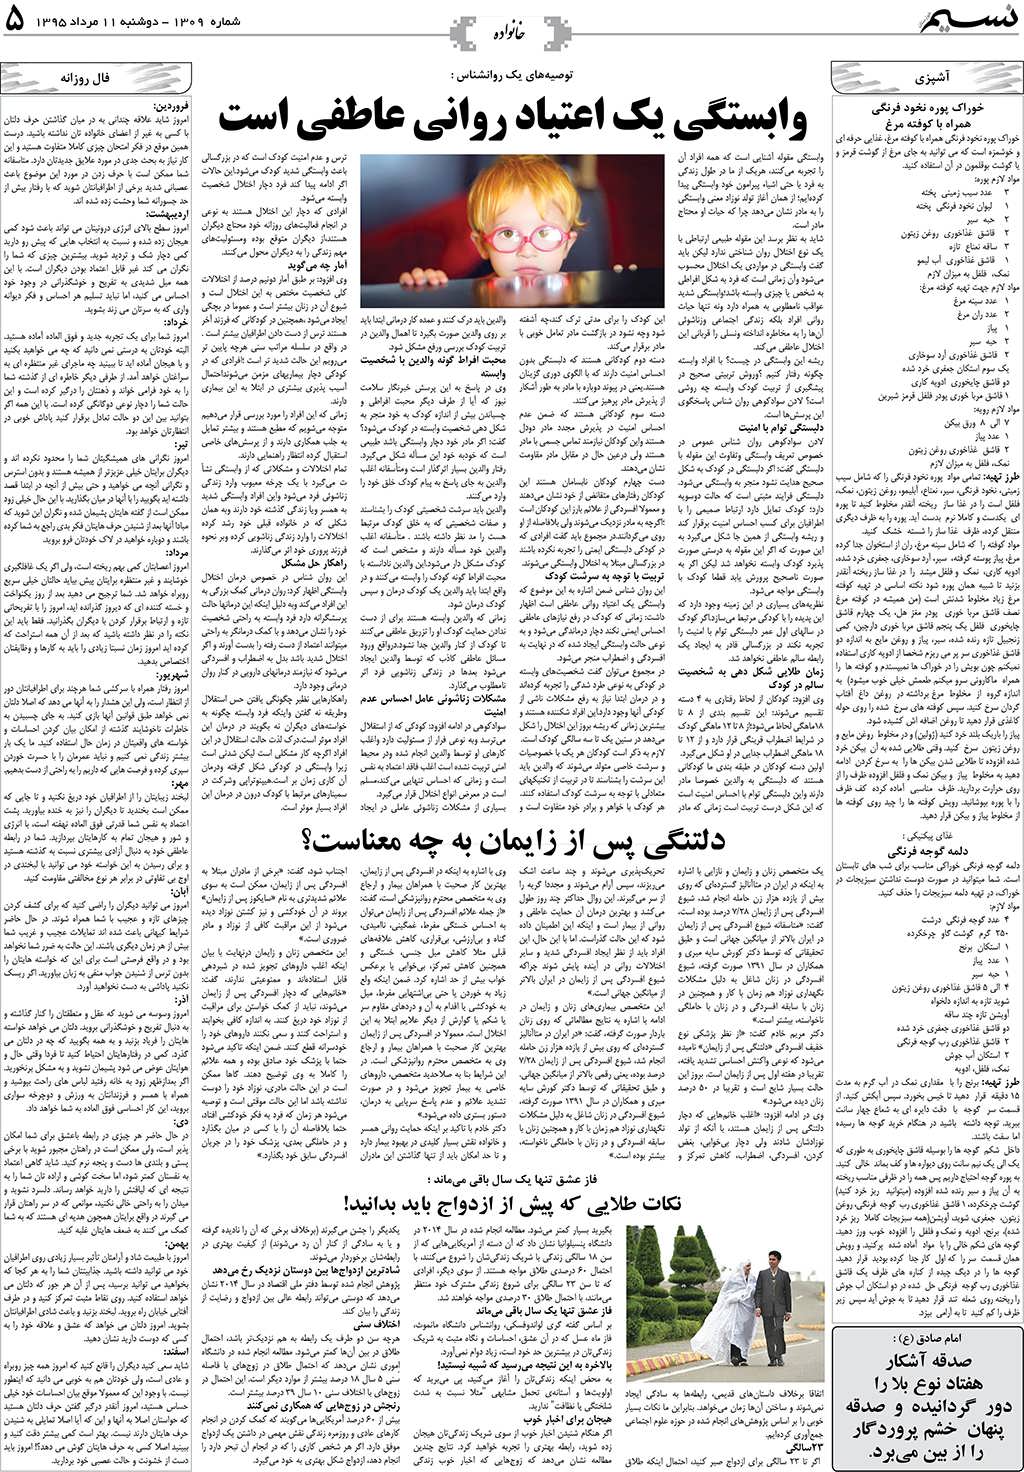 صفحه خانواده روزنامه نسیم شماره 1309